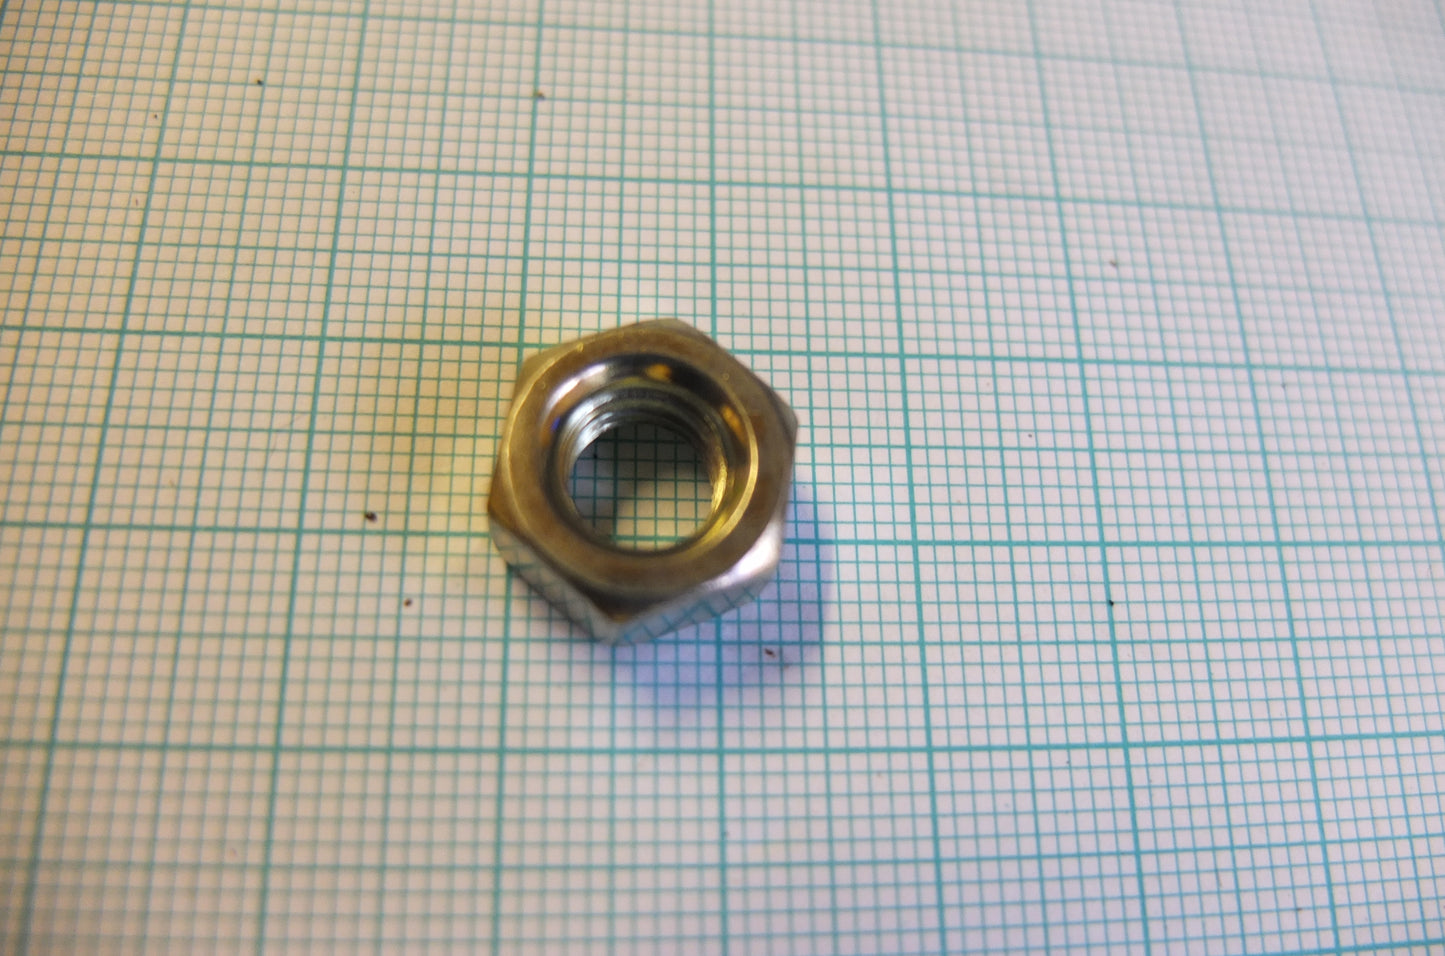 P4/059 Fulcrum pin nut